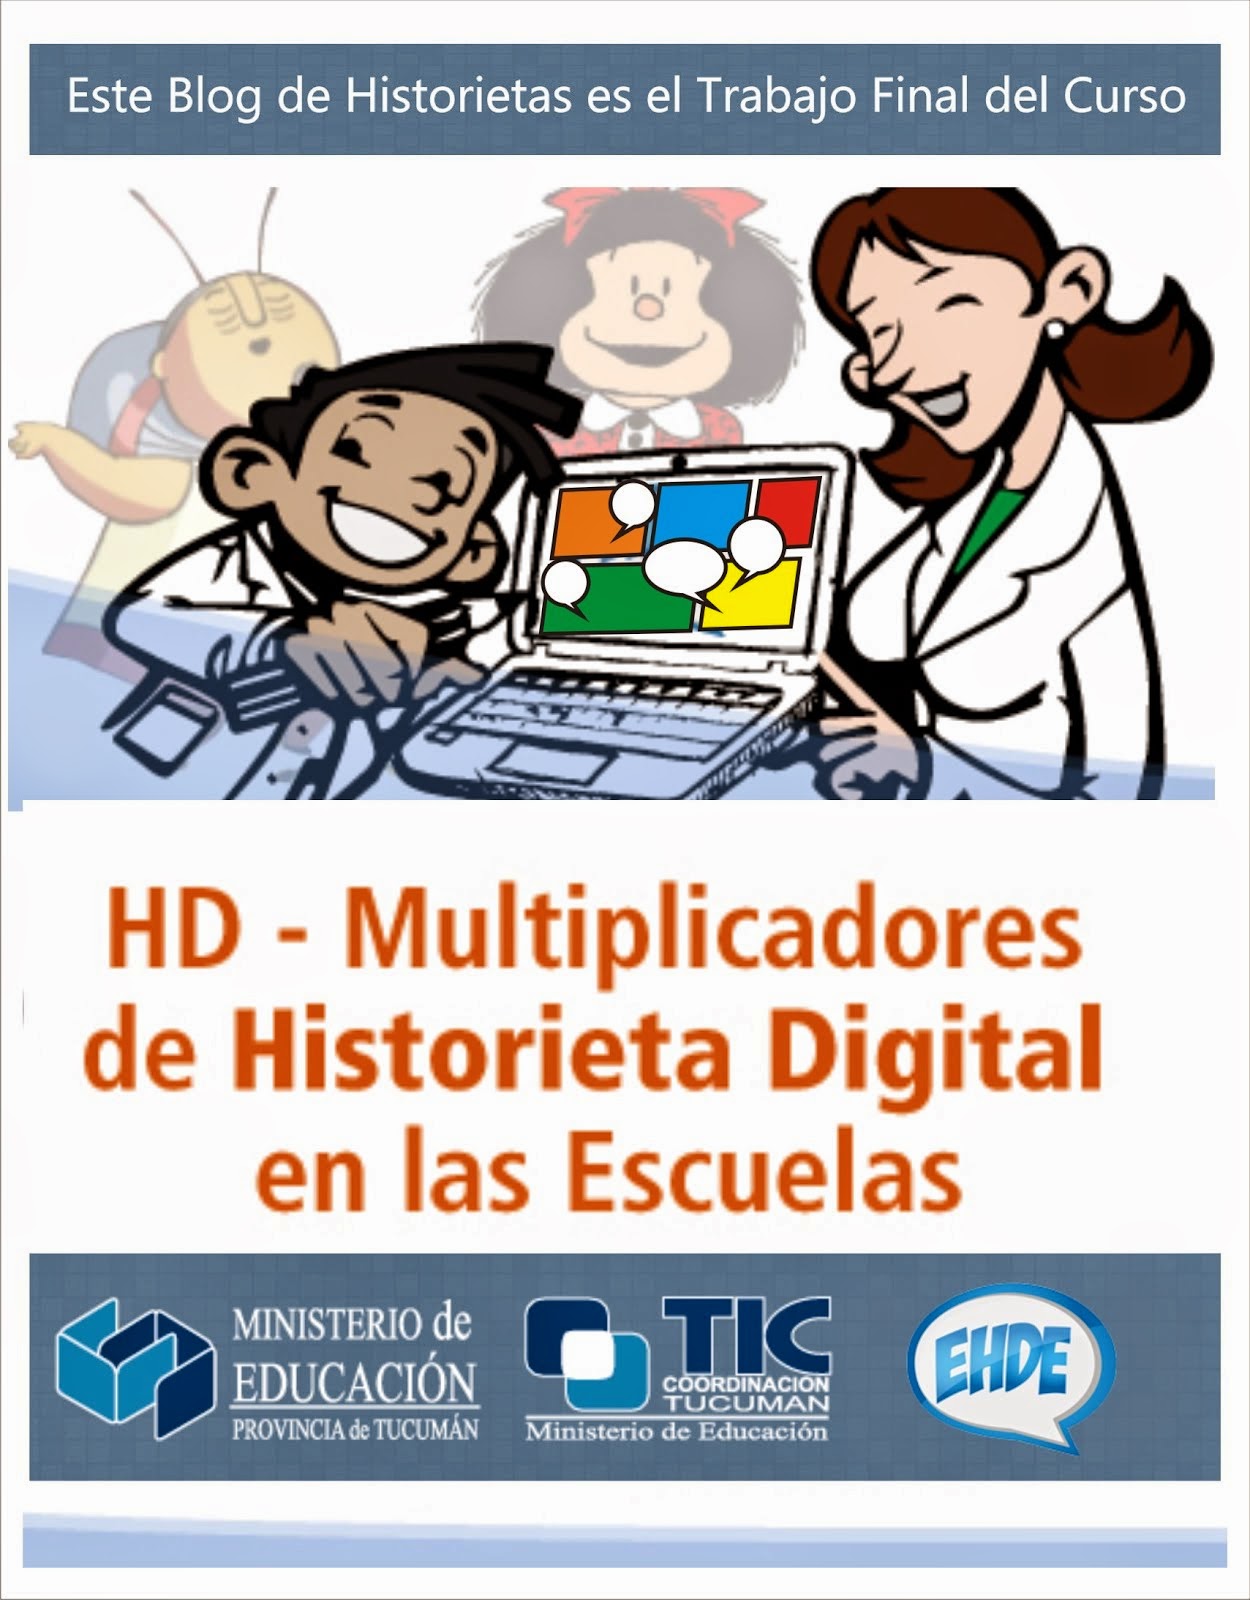 Curso Multiplicadores de Historieta Digital y Educativa  en las Escuelas